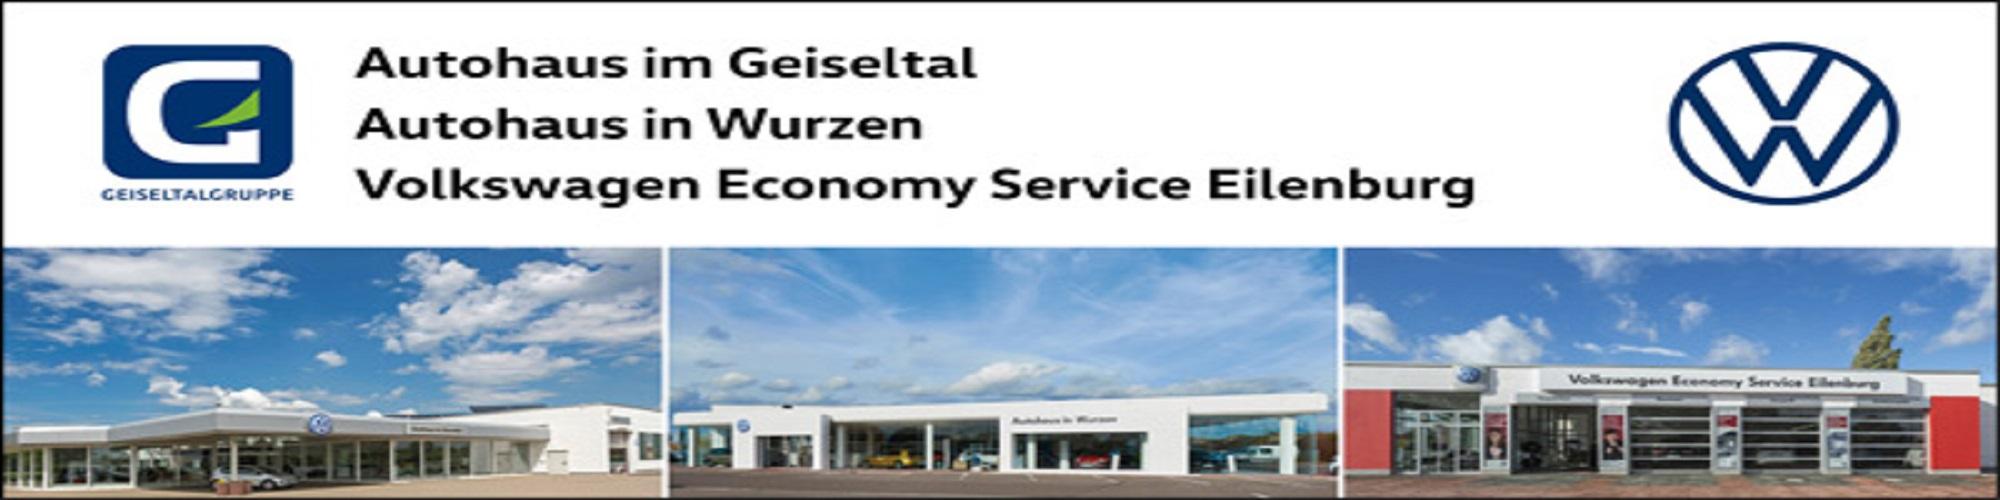 Autohaus im Geiseltal GmbH